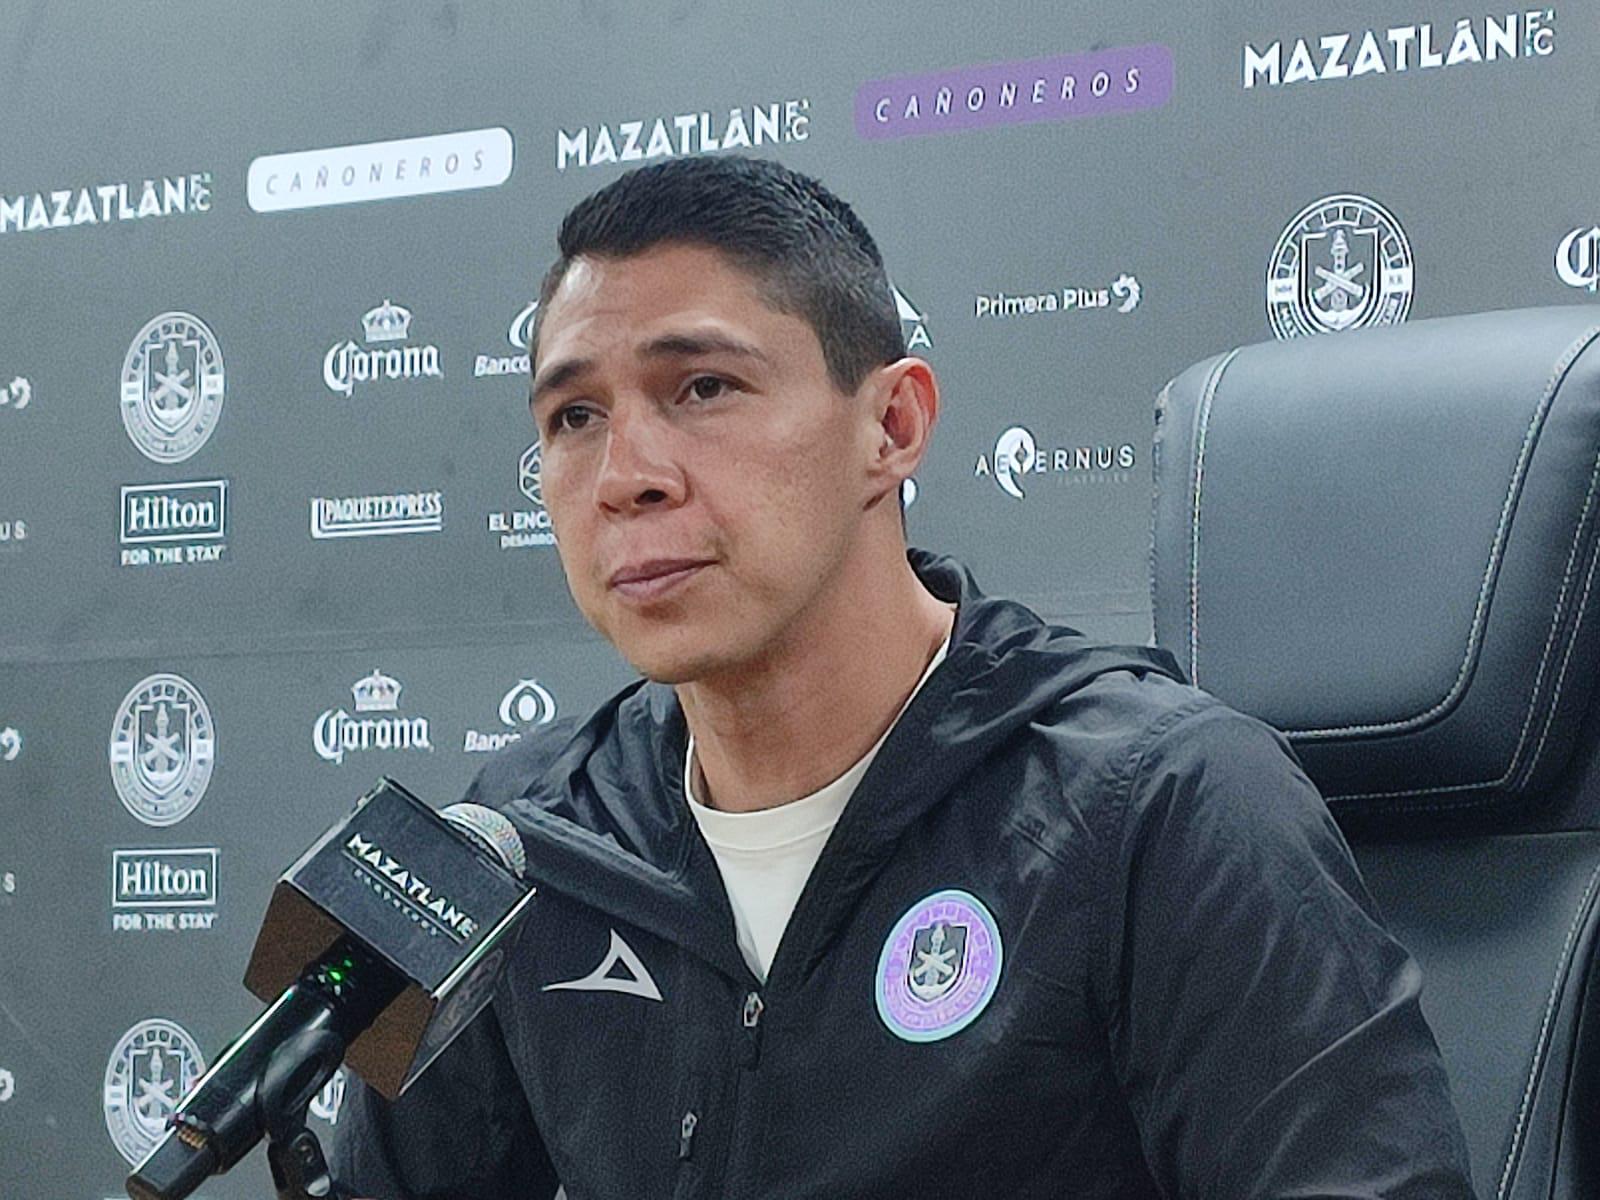 $!Las lesiones frustran a Mazatlán FC, pero no se bajan los brazos: Hugo González